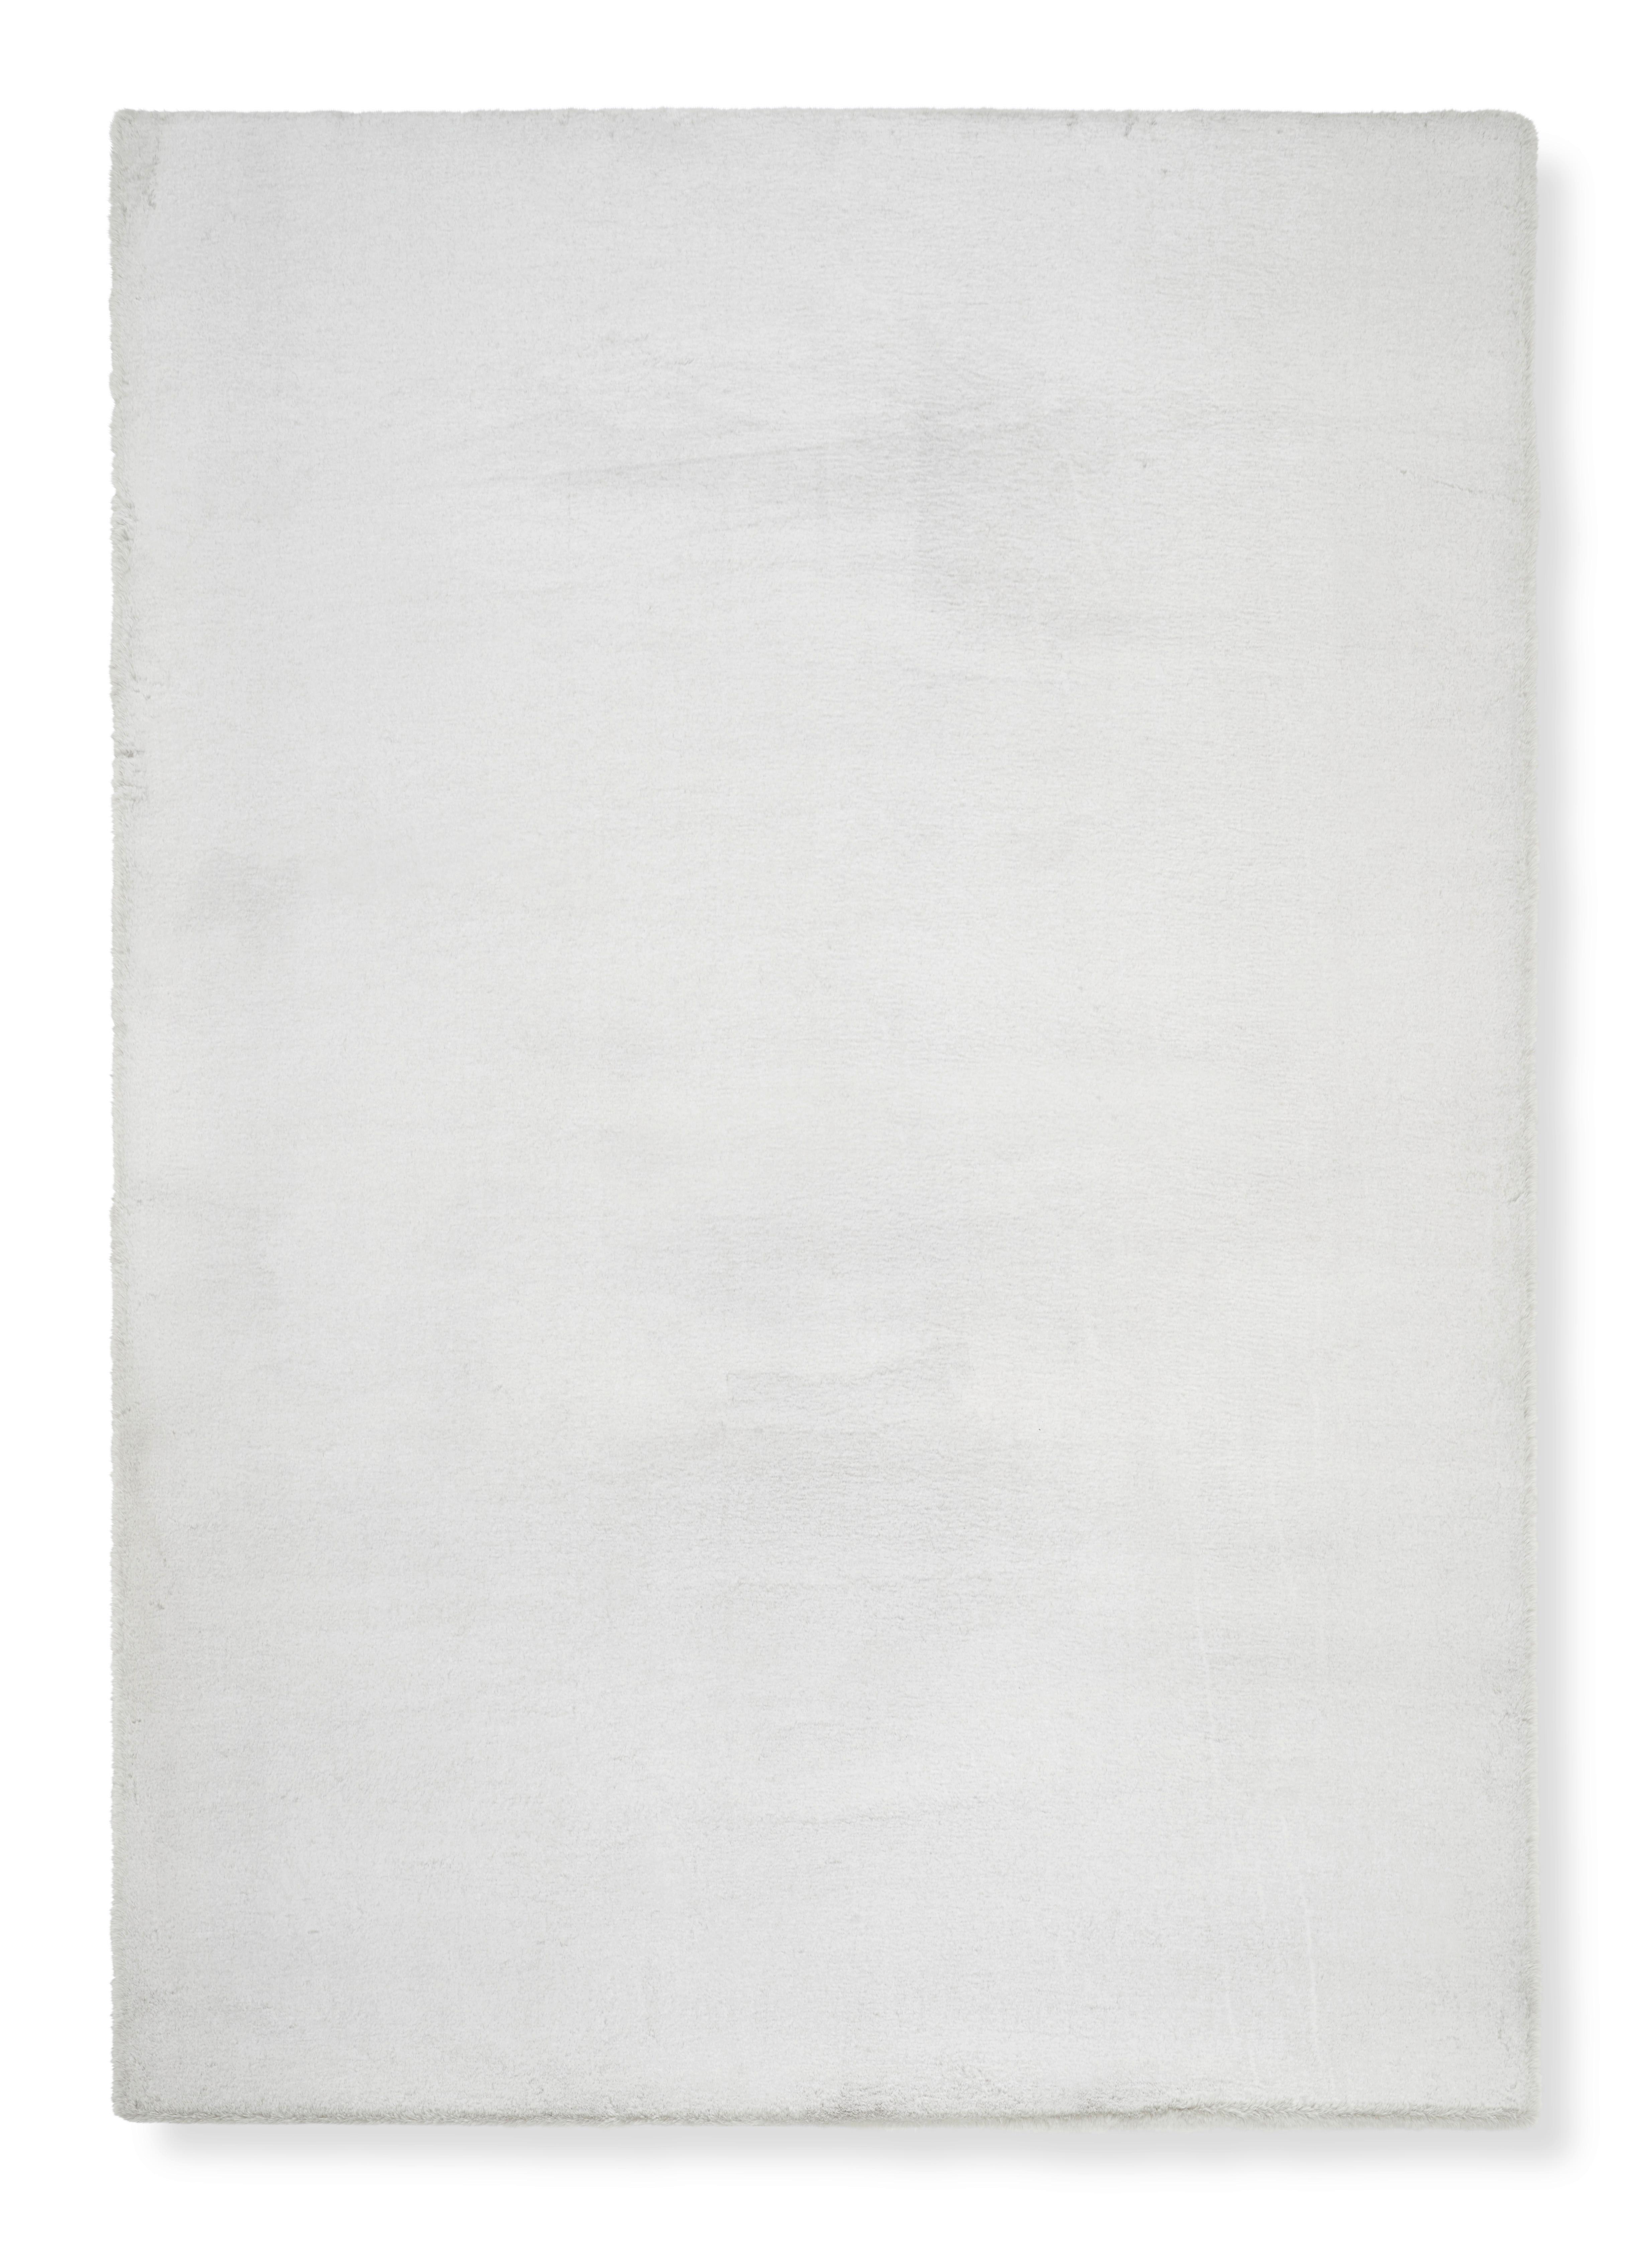 Umelá Kožušina Denise 1, 80/150cm, Strieborná - biela/strieborná, Romantický / Vidiecky, textil/kožušina (80/150cm) - Modern Living